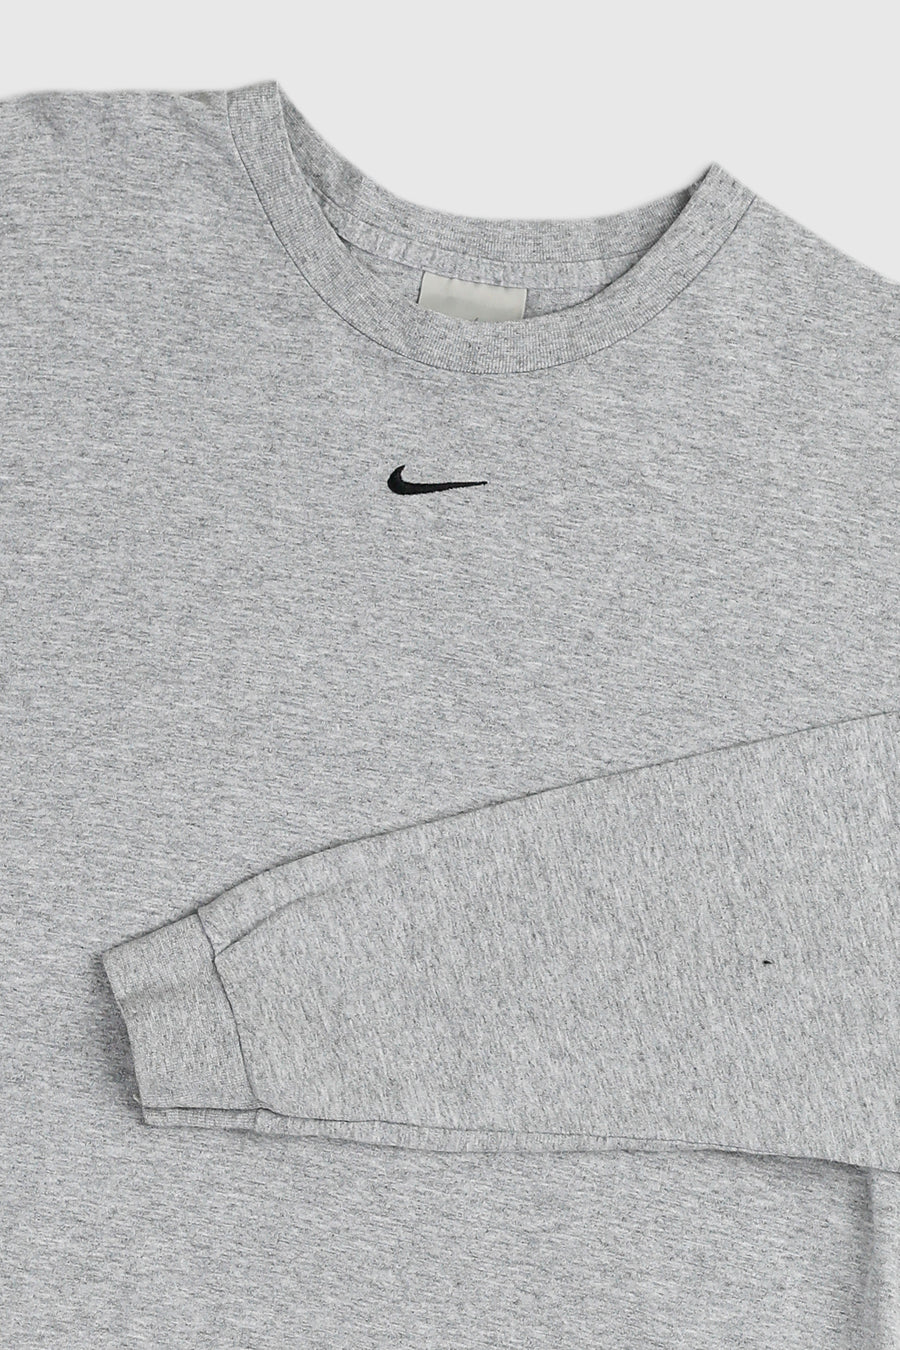 Vintage Nike Long Sleeve Tee - M, L